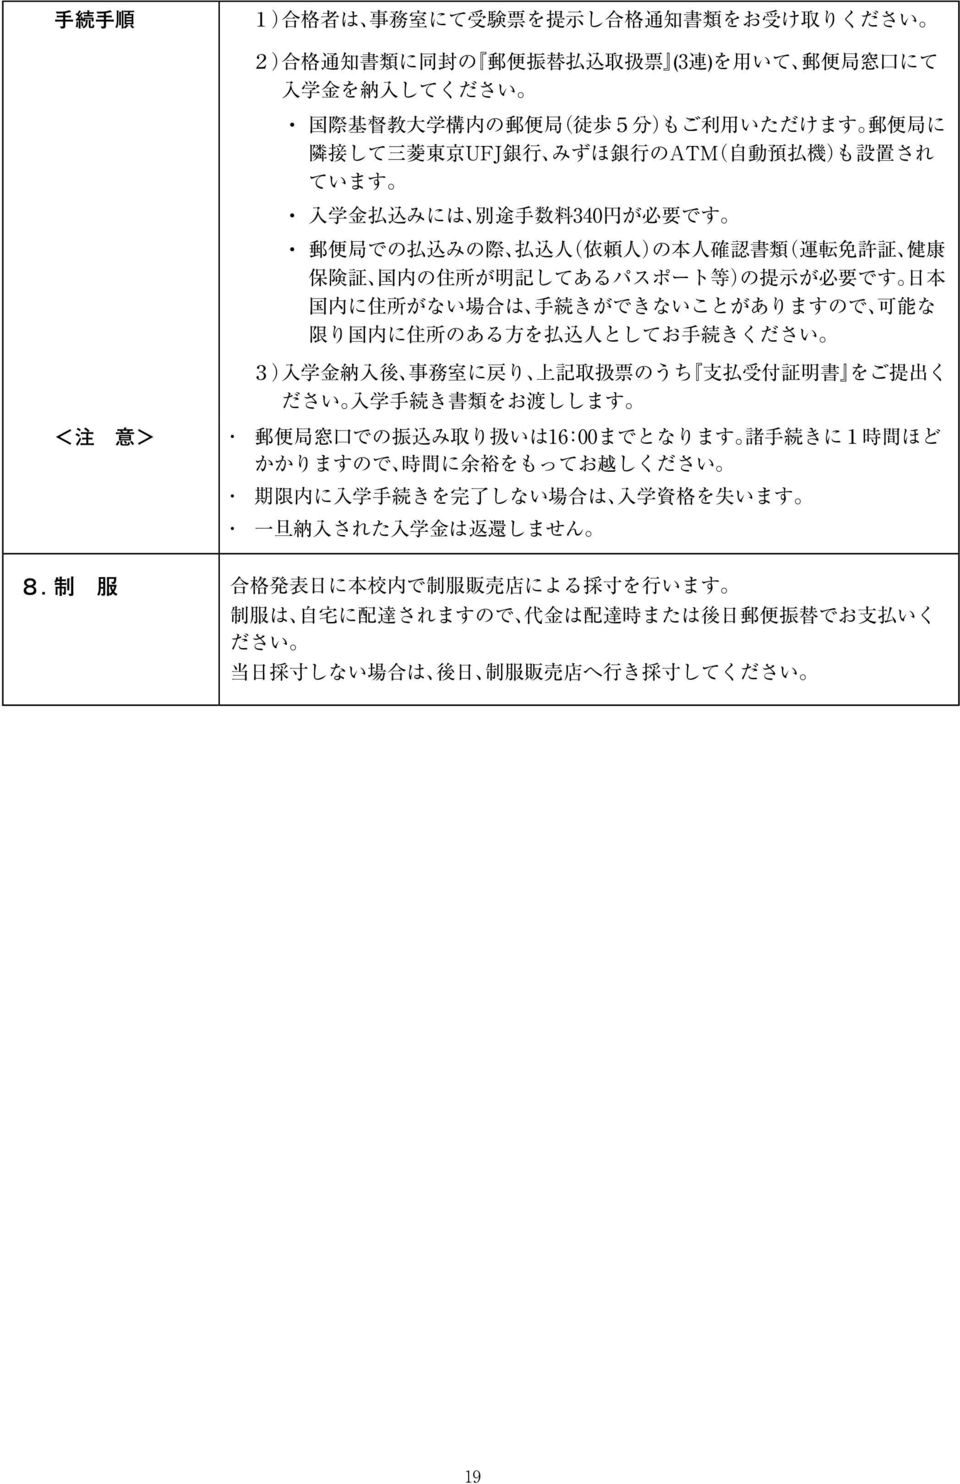 記 してあるパスポート 等 )の 提 示 が 必 要 です 日 本 国 内 に 住 所 がない 場 合 は 手 続 きができないことがありますので 可 能 な 限 り 国 内 に 住 所 のある 方 を 払 込 人 としてお 手 続 きください 3) 入 学 金 納 入 後 事 務 室 に 戻 り 上 記 取 扱 票 のうち 支 払 受 付 証 明 書 をご 提 出 く ださい 入 学 手 続